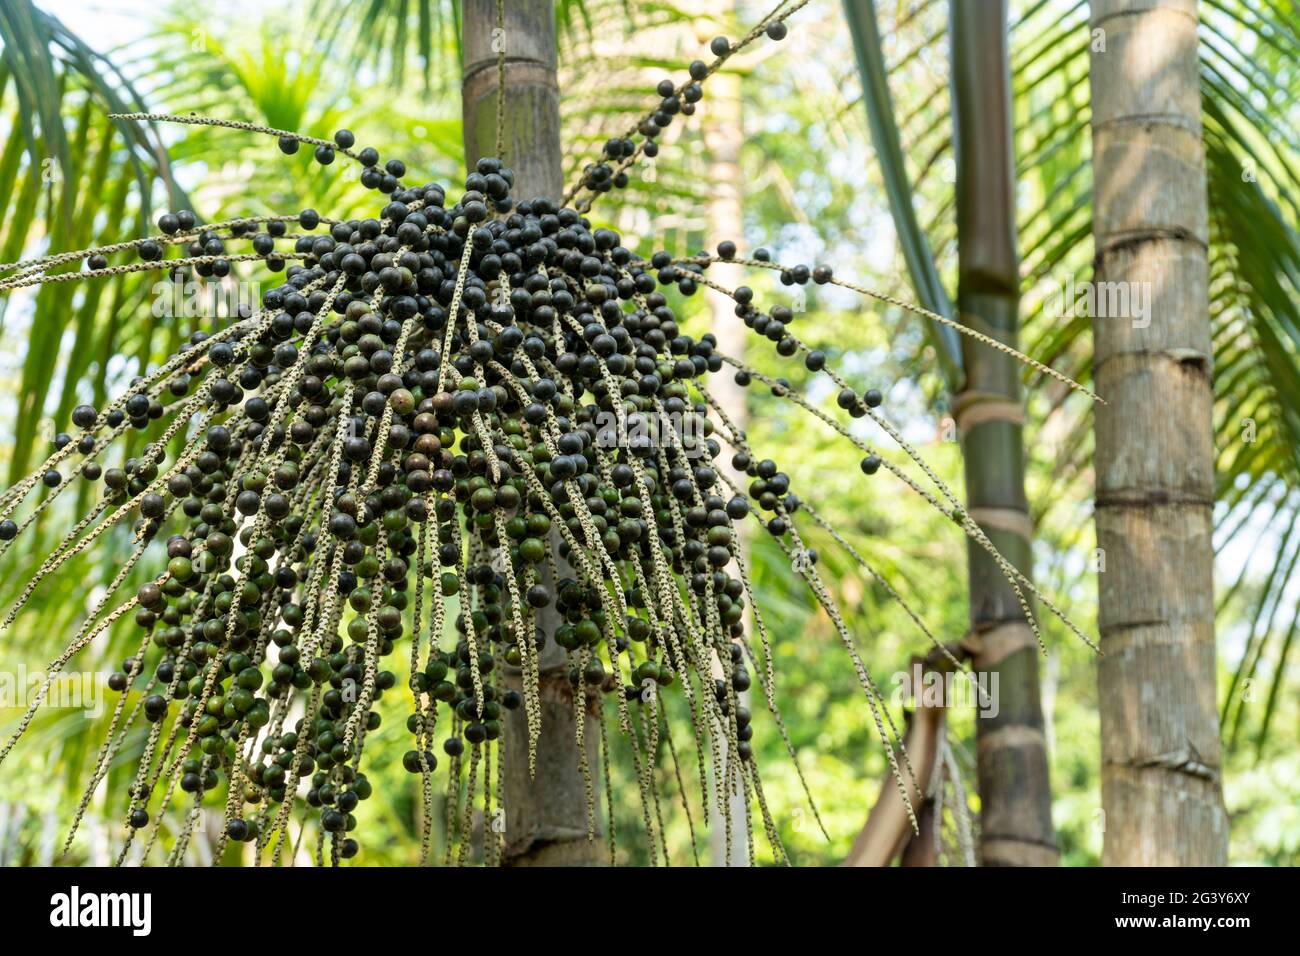 Nahaufnahme von frischen acai-Beere Fruchtbündel auf der Farm im amazonas-Regenwald, Brasilien. Selektiver Fokus. Konzept der Nahrung, Ökologie, Umwelt, Vitamin, gesund Stockfoto